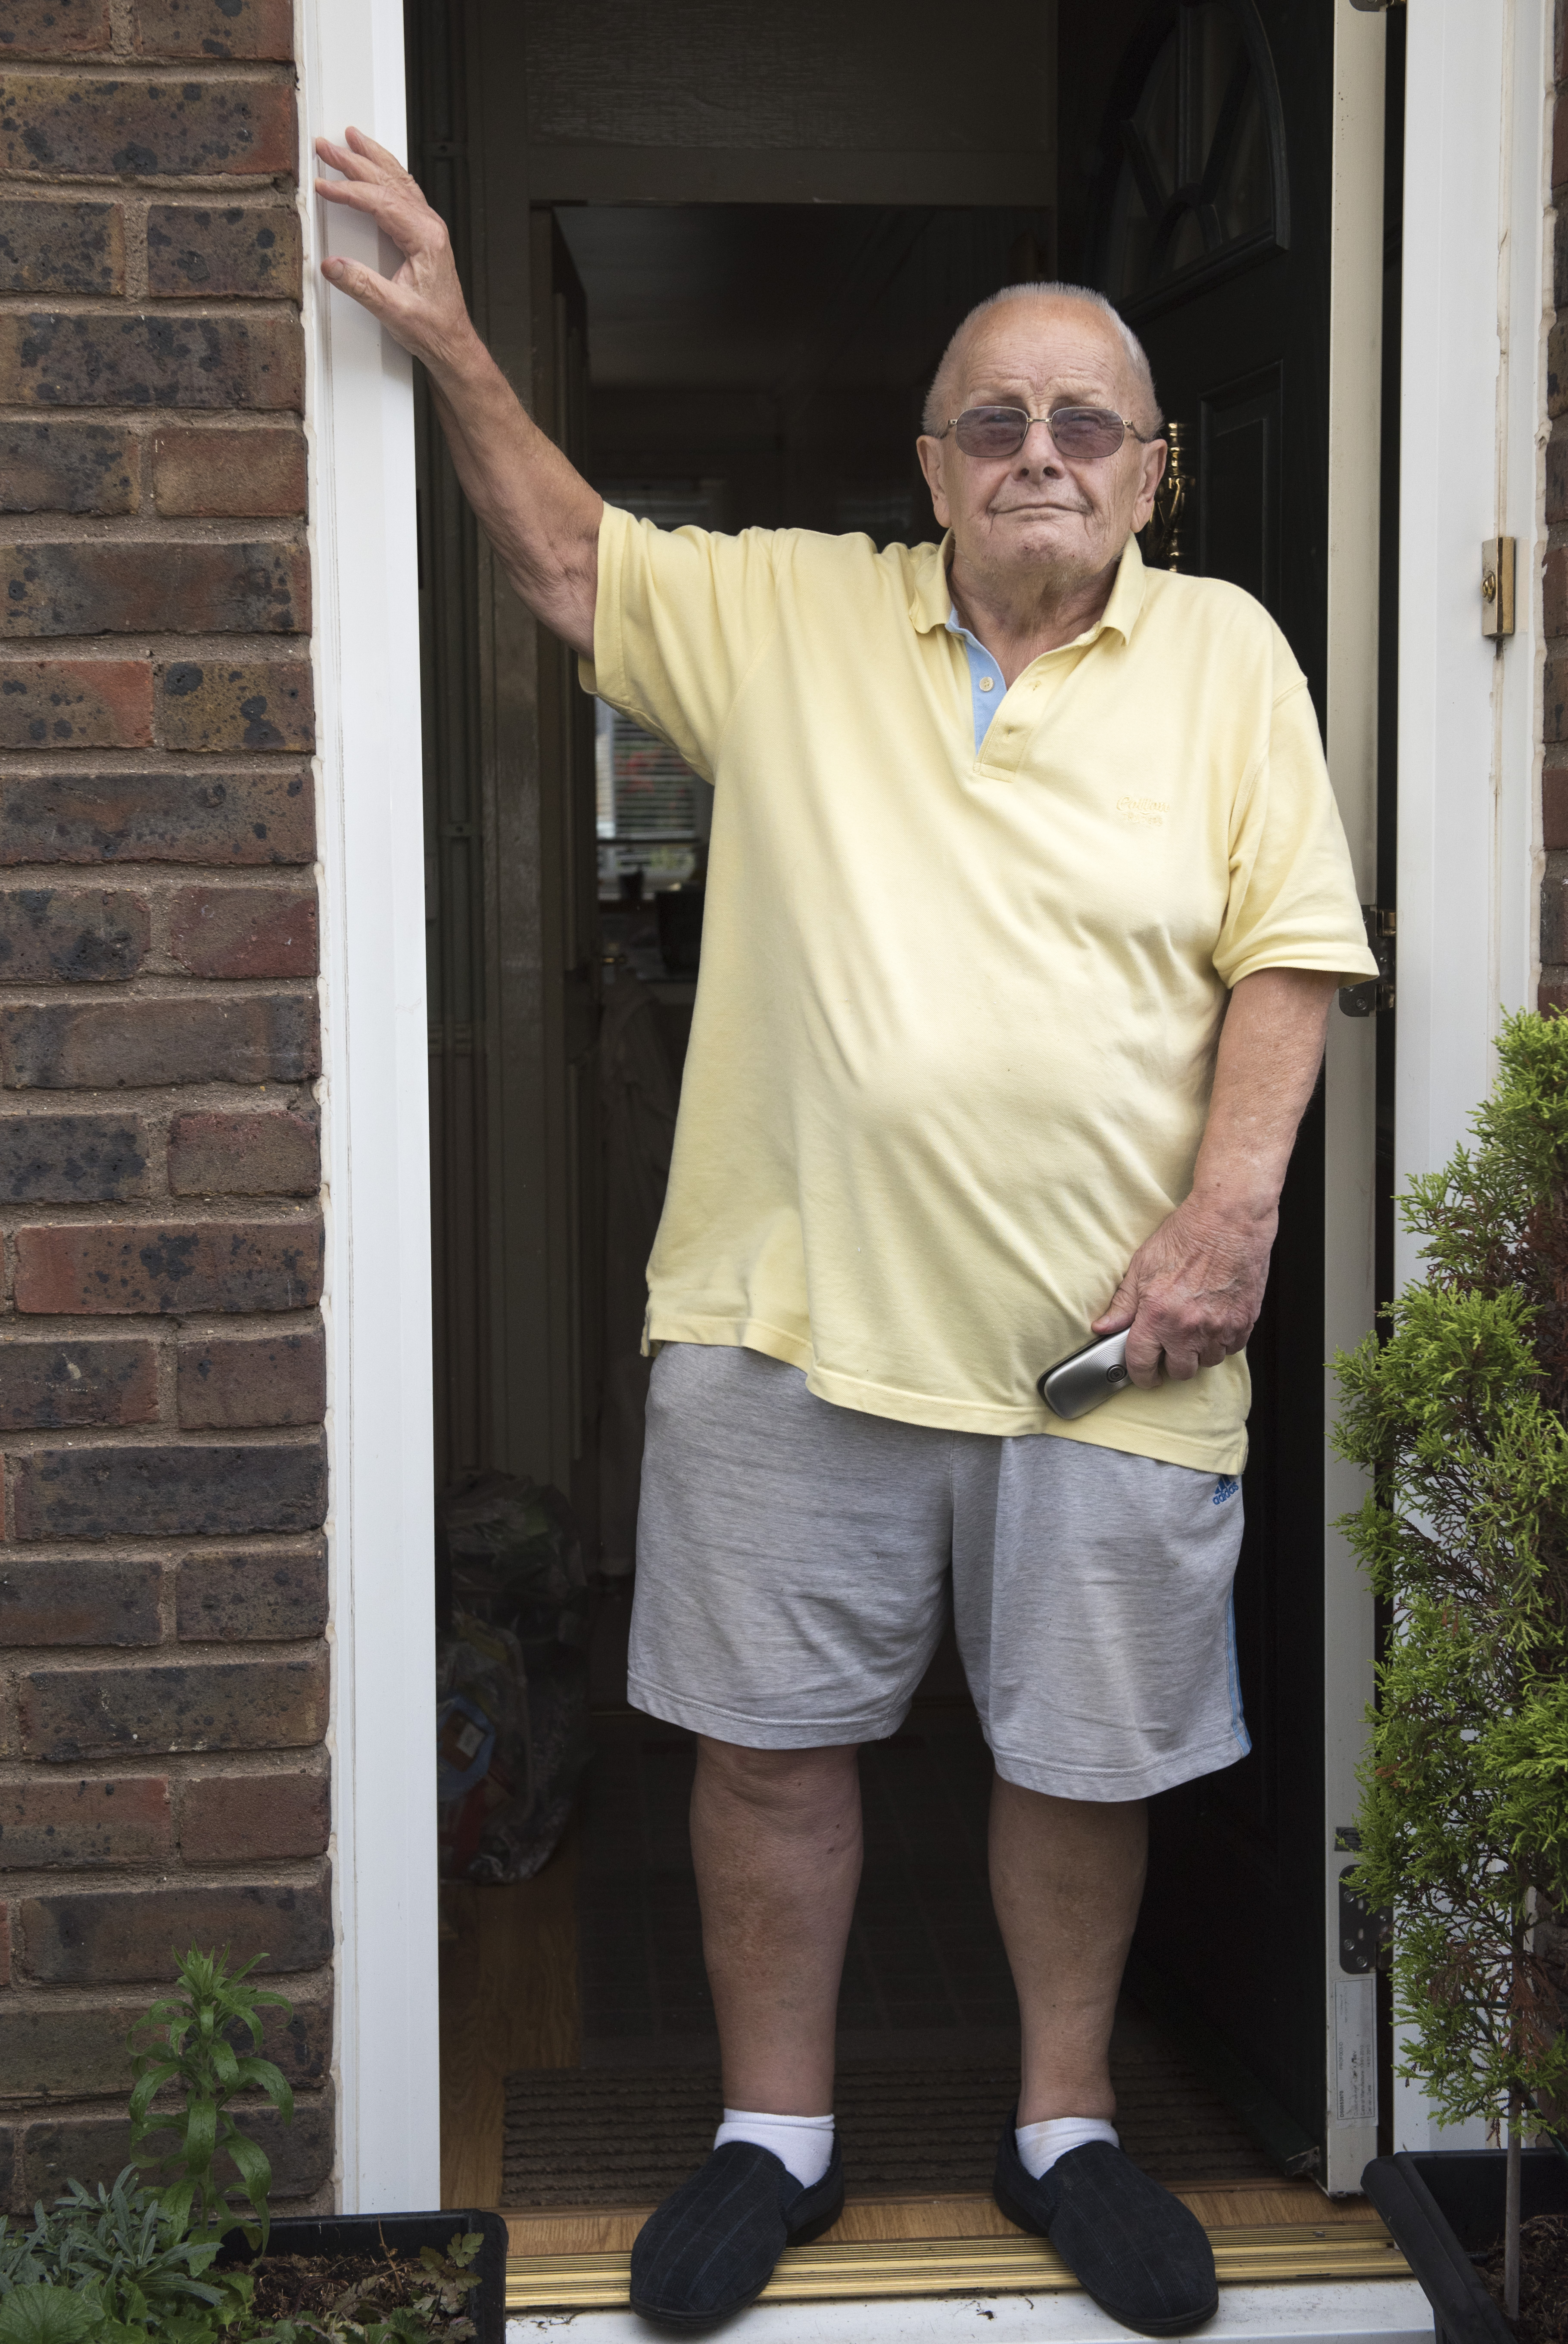 Brian Hendon, 82, will nicht ausziehen, weil das Anwesen „alles ist, was er weiß“